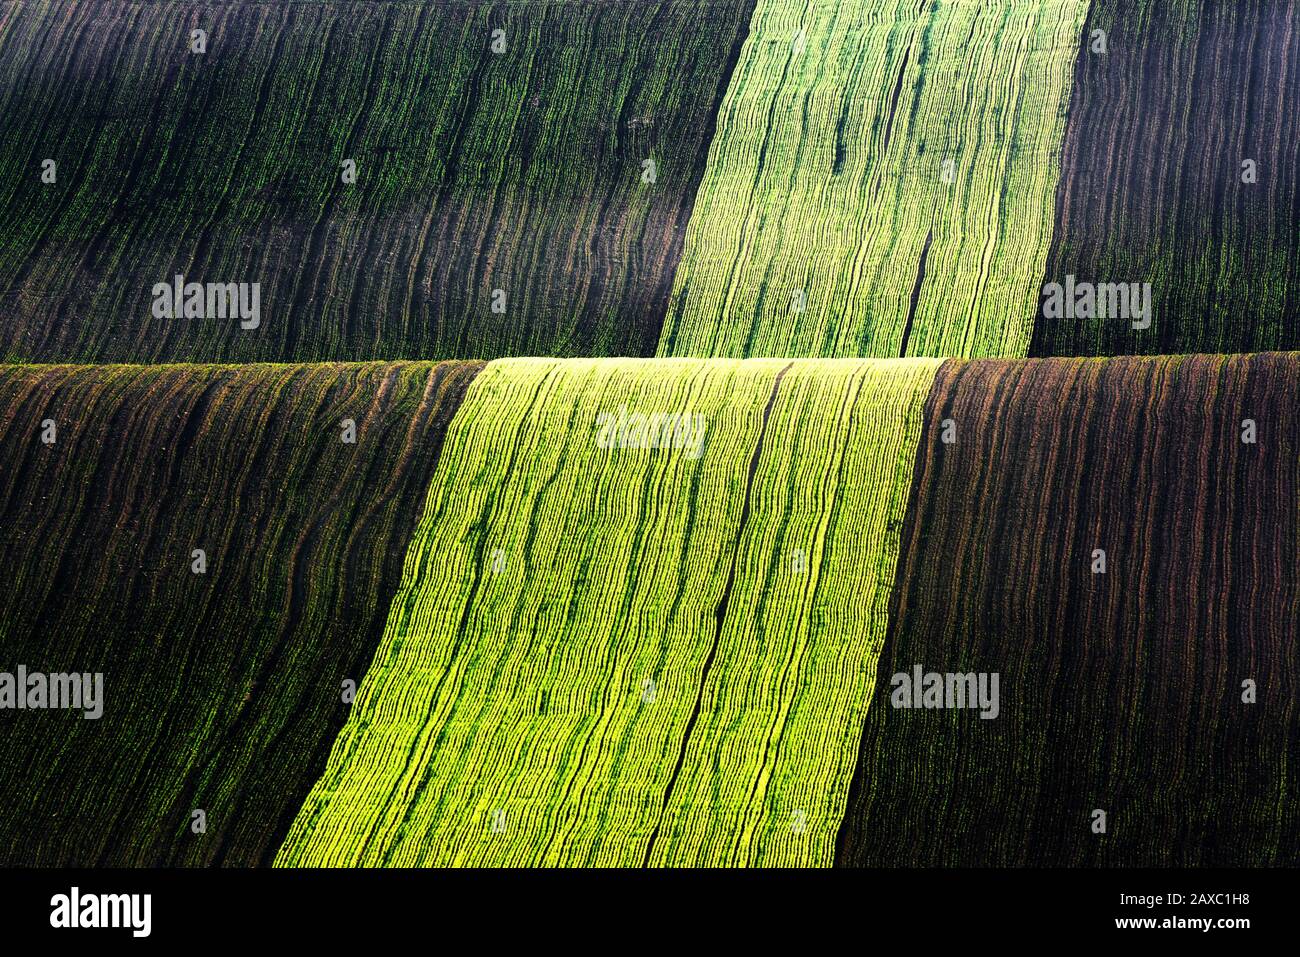 Paesaggio rurale di primavera con colline a strisce colorate. Onde verdi e marroni dei campi agricoli della Moravia meridionale, Repubblica Ceca. Può essere utilizzato come sfondo naturale o texture Foto Stock